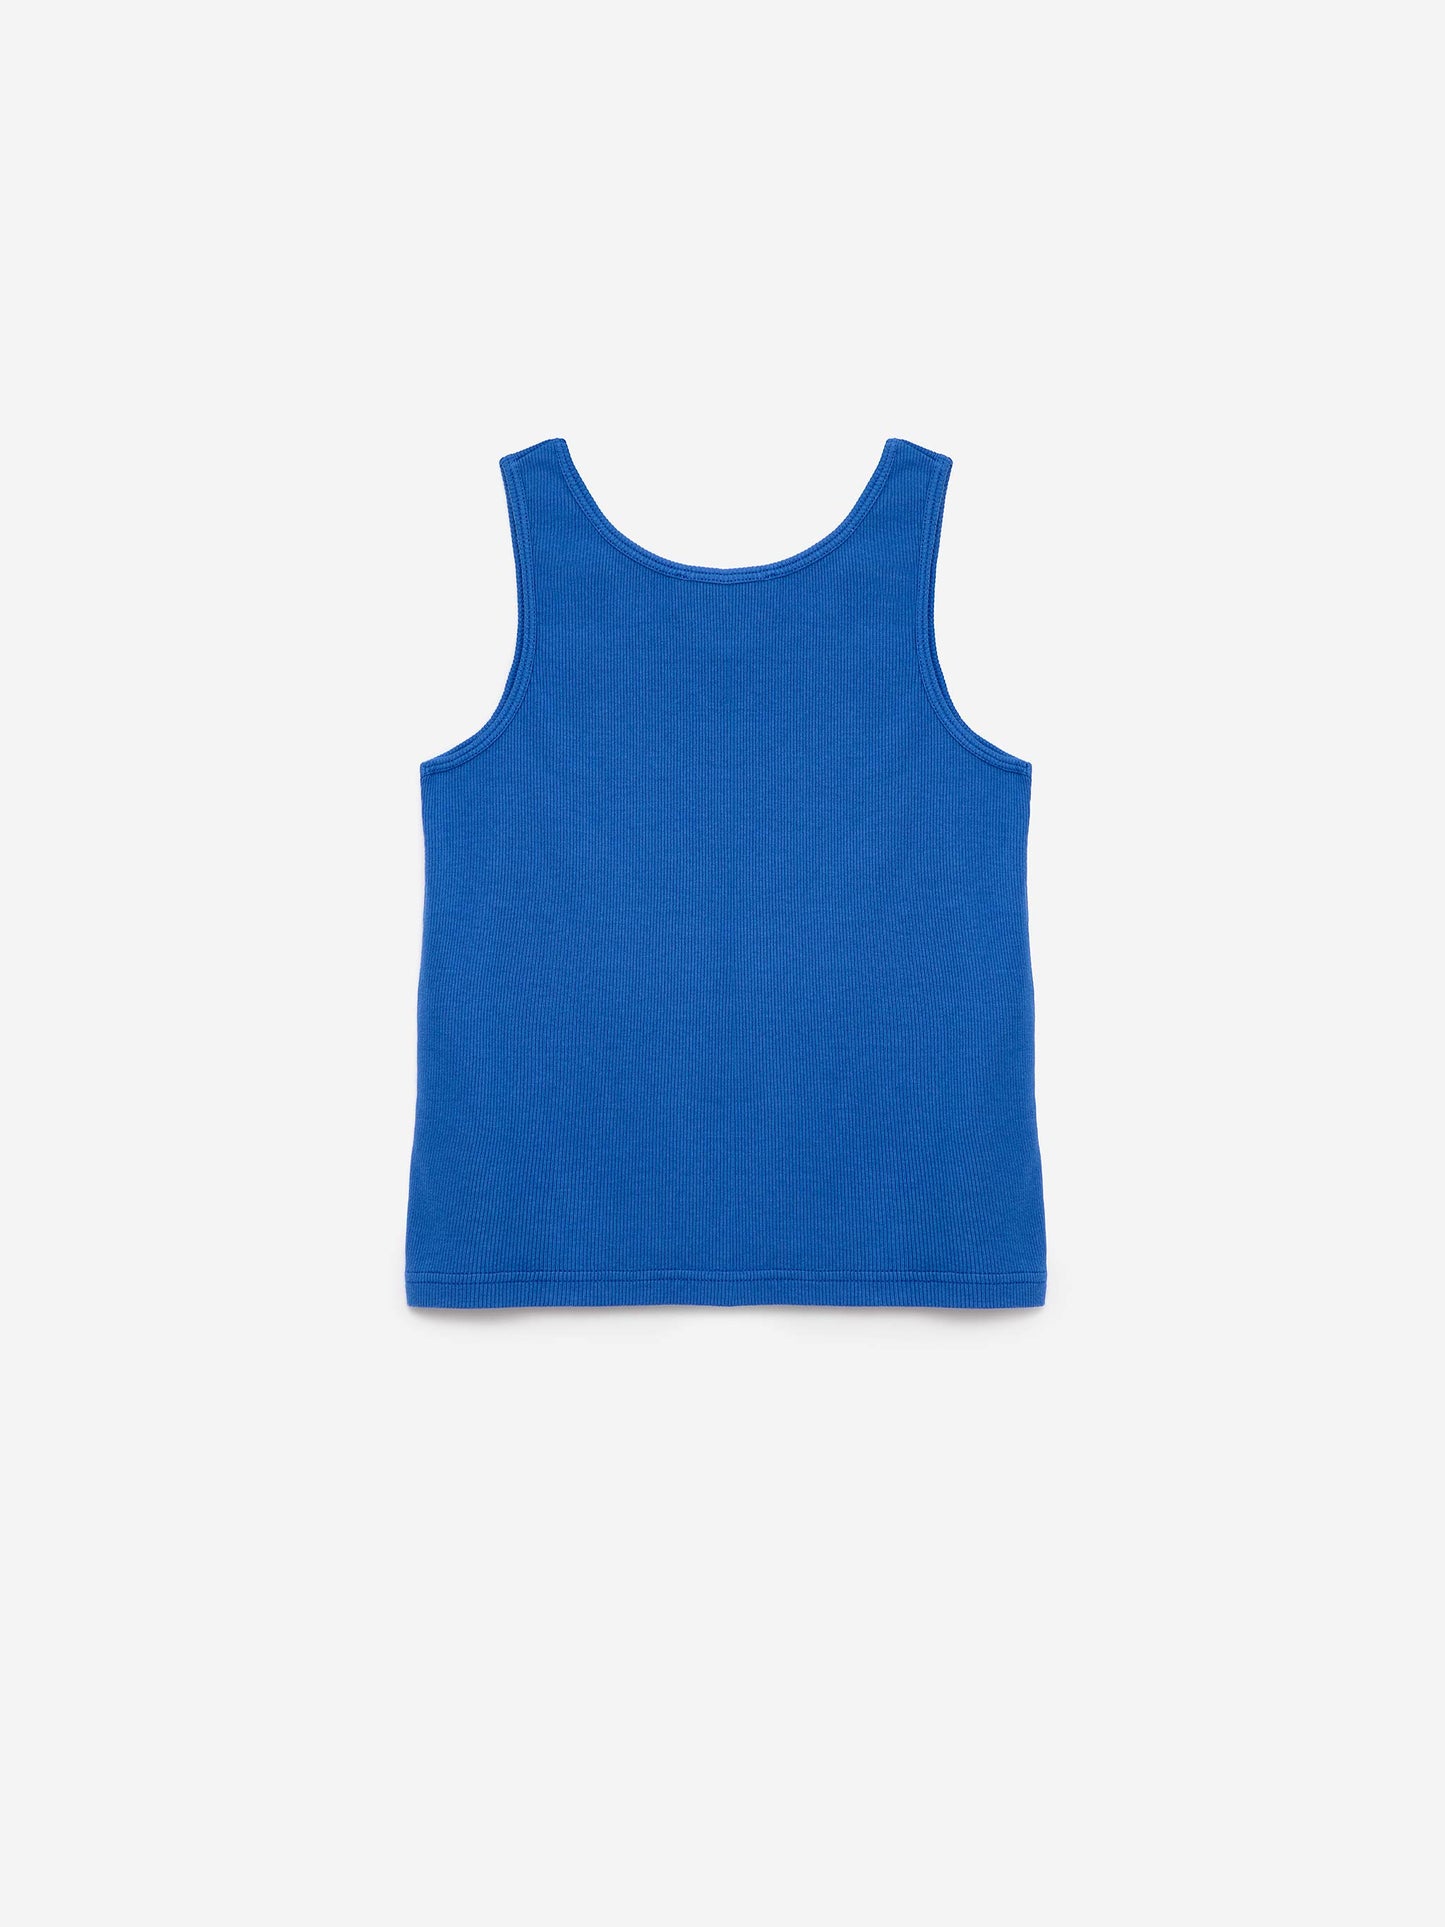 T-shirt nº09 Sapphire Blue